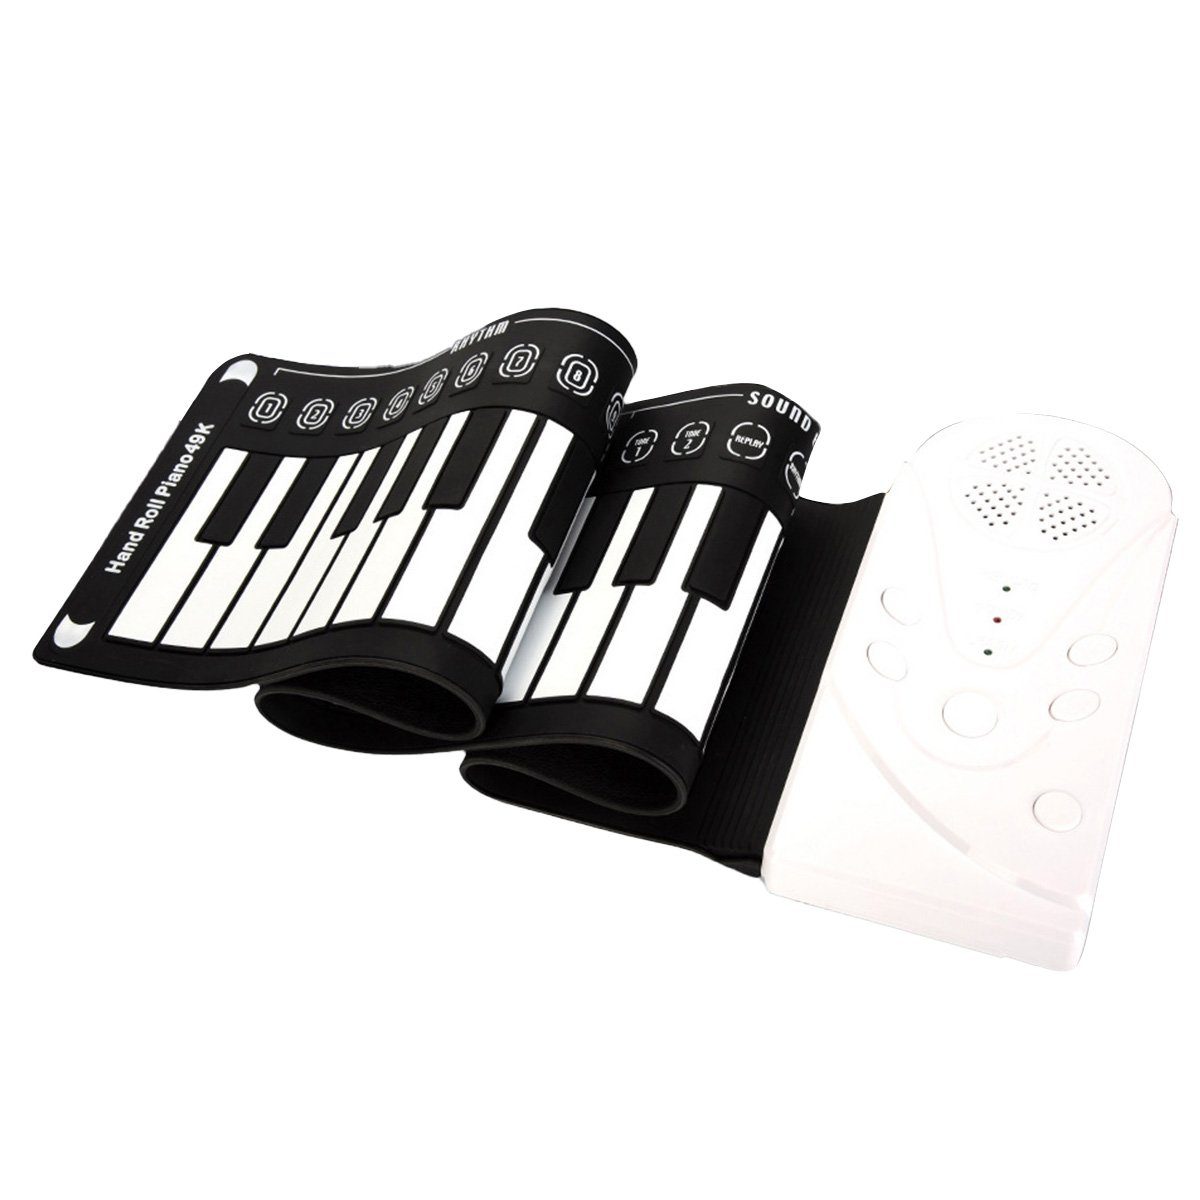 yozhiqu Digitalpiano 49-Tasten-Handrollklavier mit Trompete - Tragbares faltbares Keyboard, Kompakte Größe, einfach zu transportieren, ideal für Anfänger